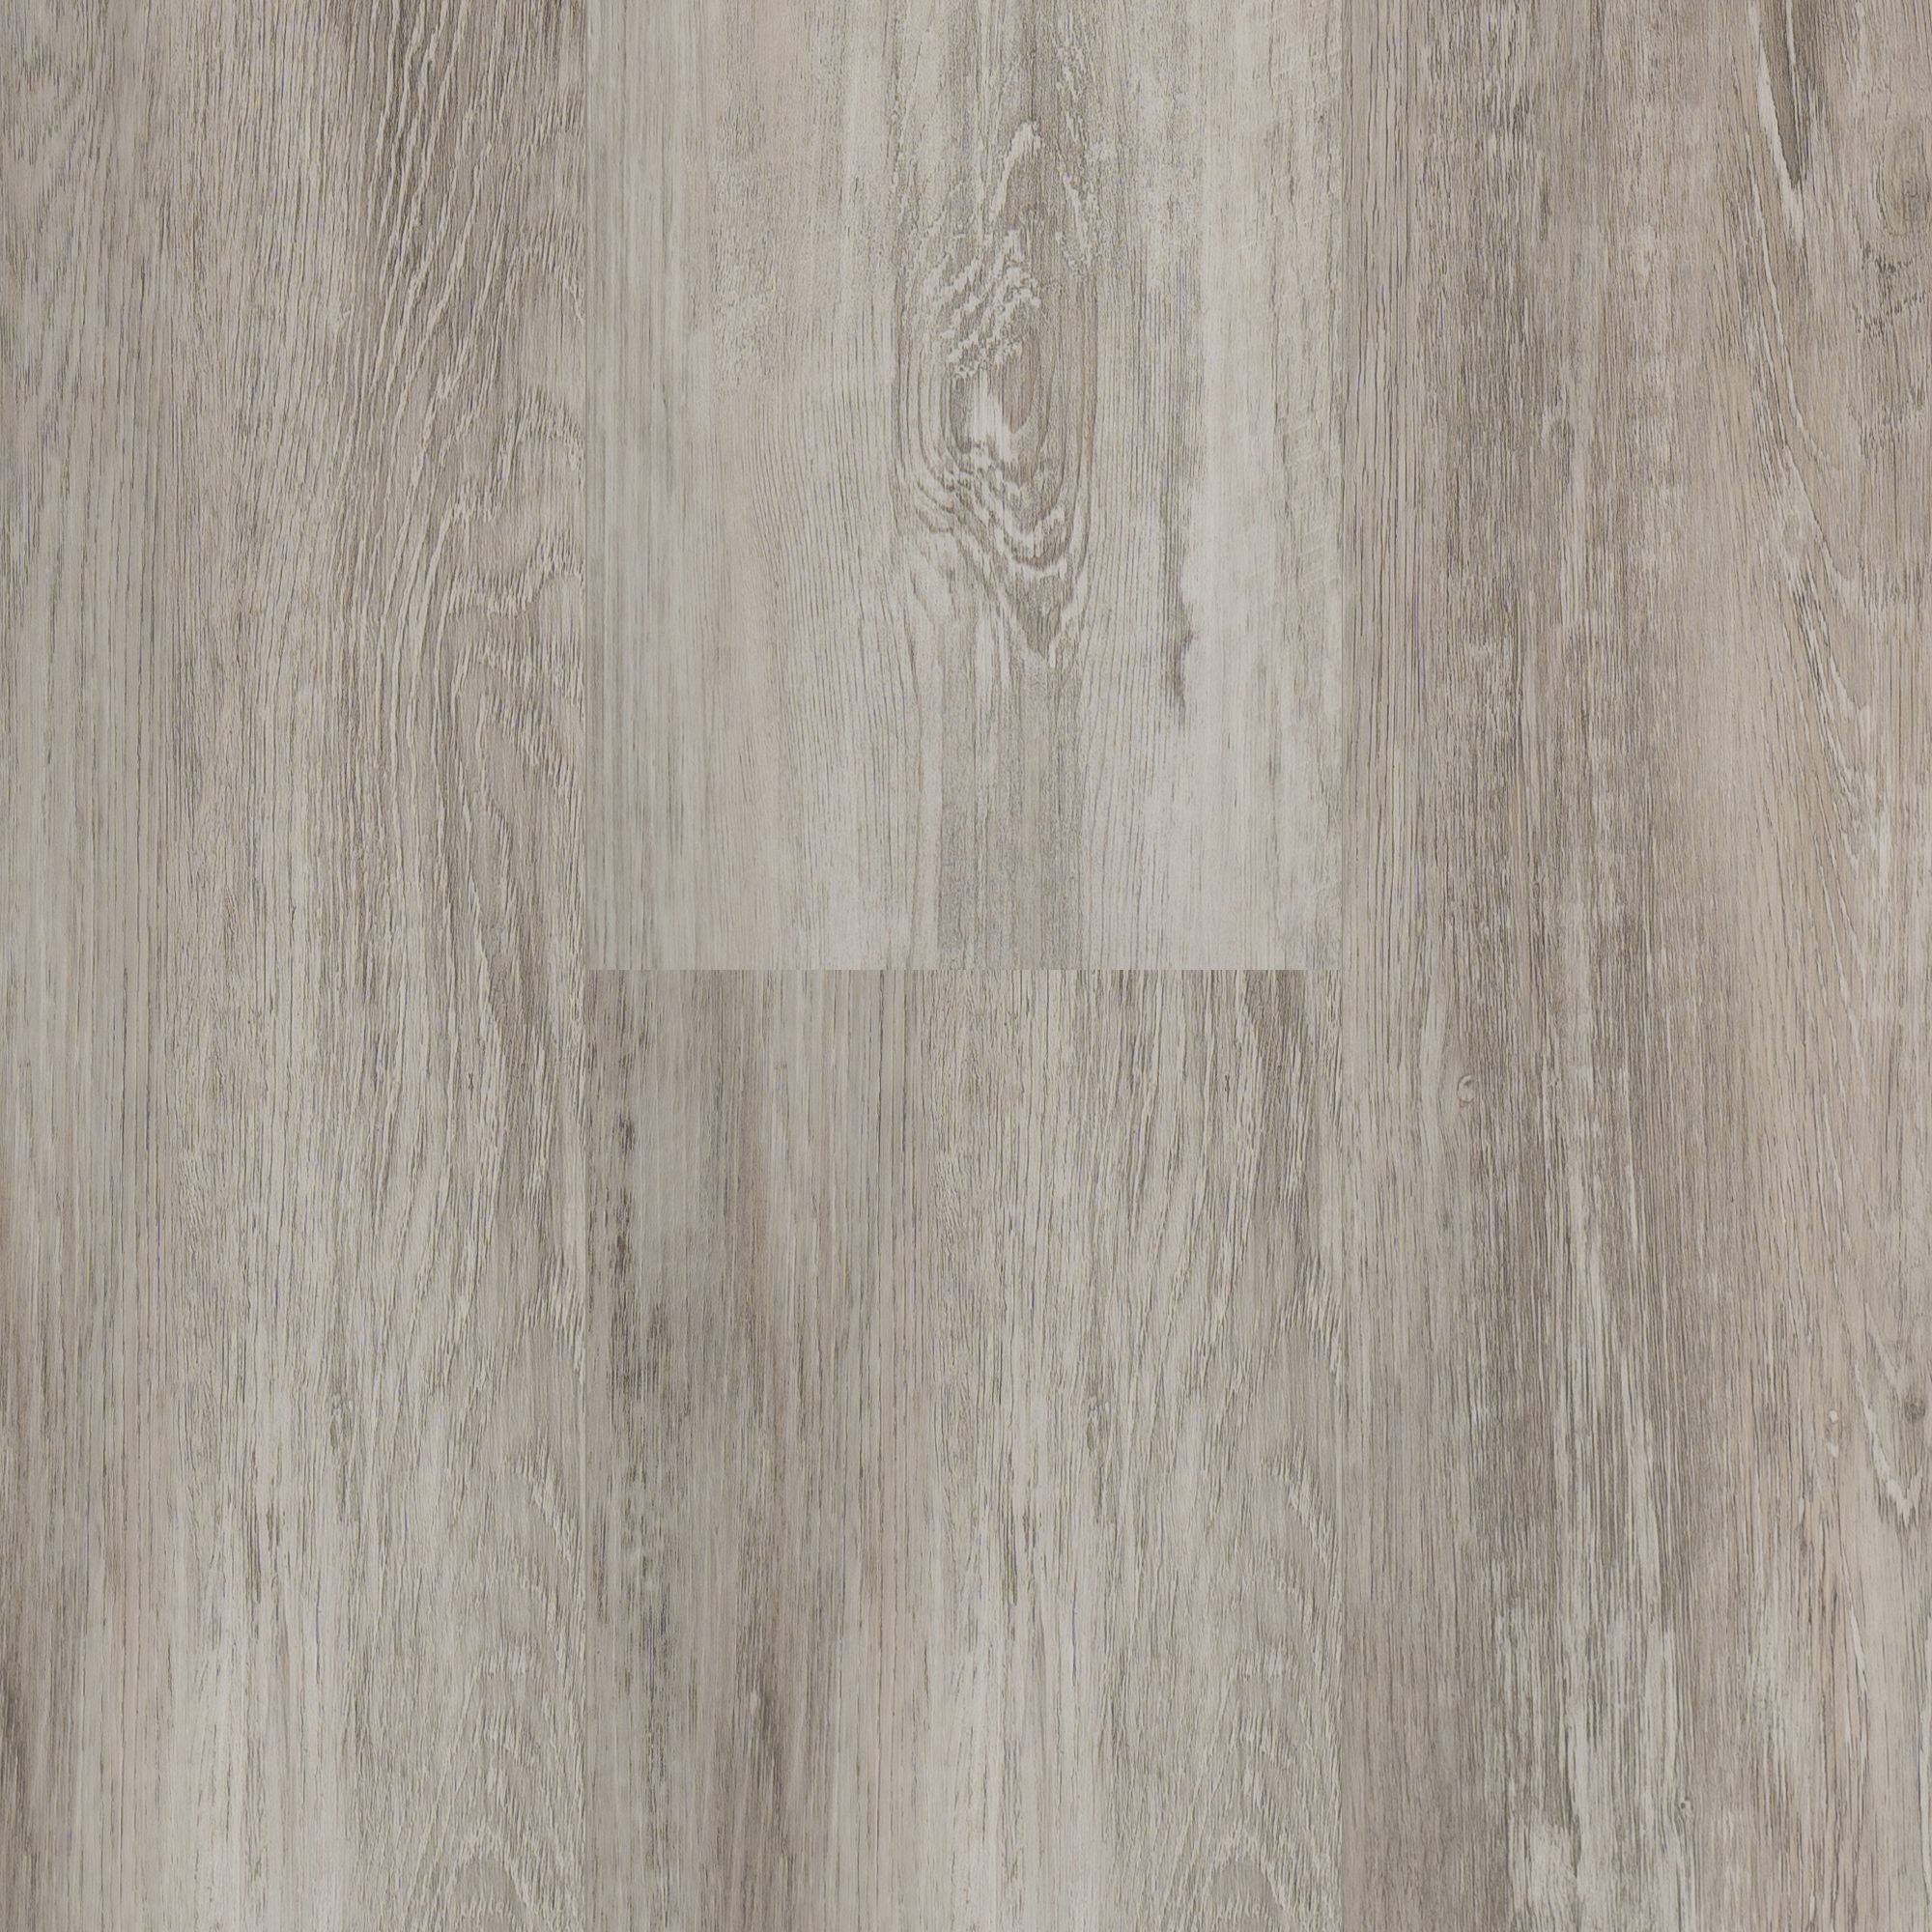 Кварц-виниловый ламинат Van Kleeck Floor Дирк VKF-017 ламинат clix floor